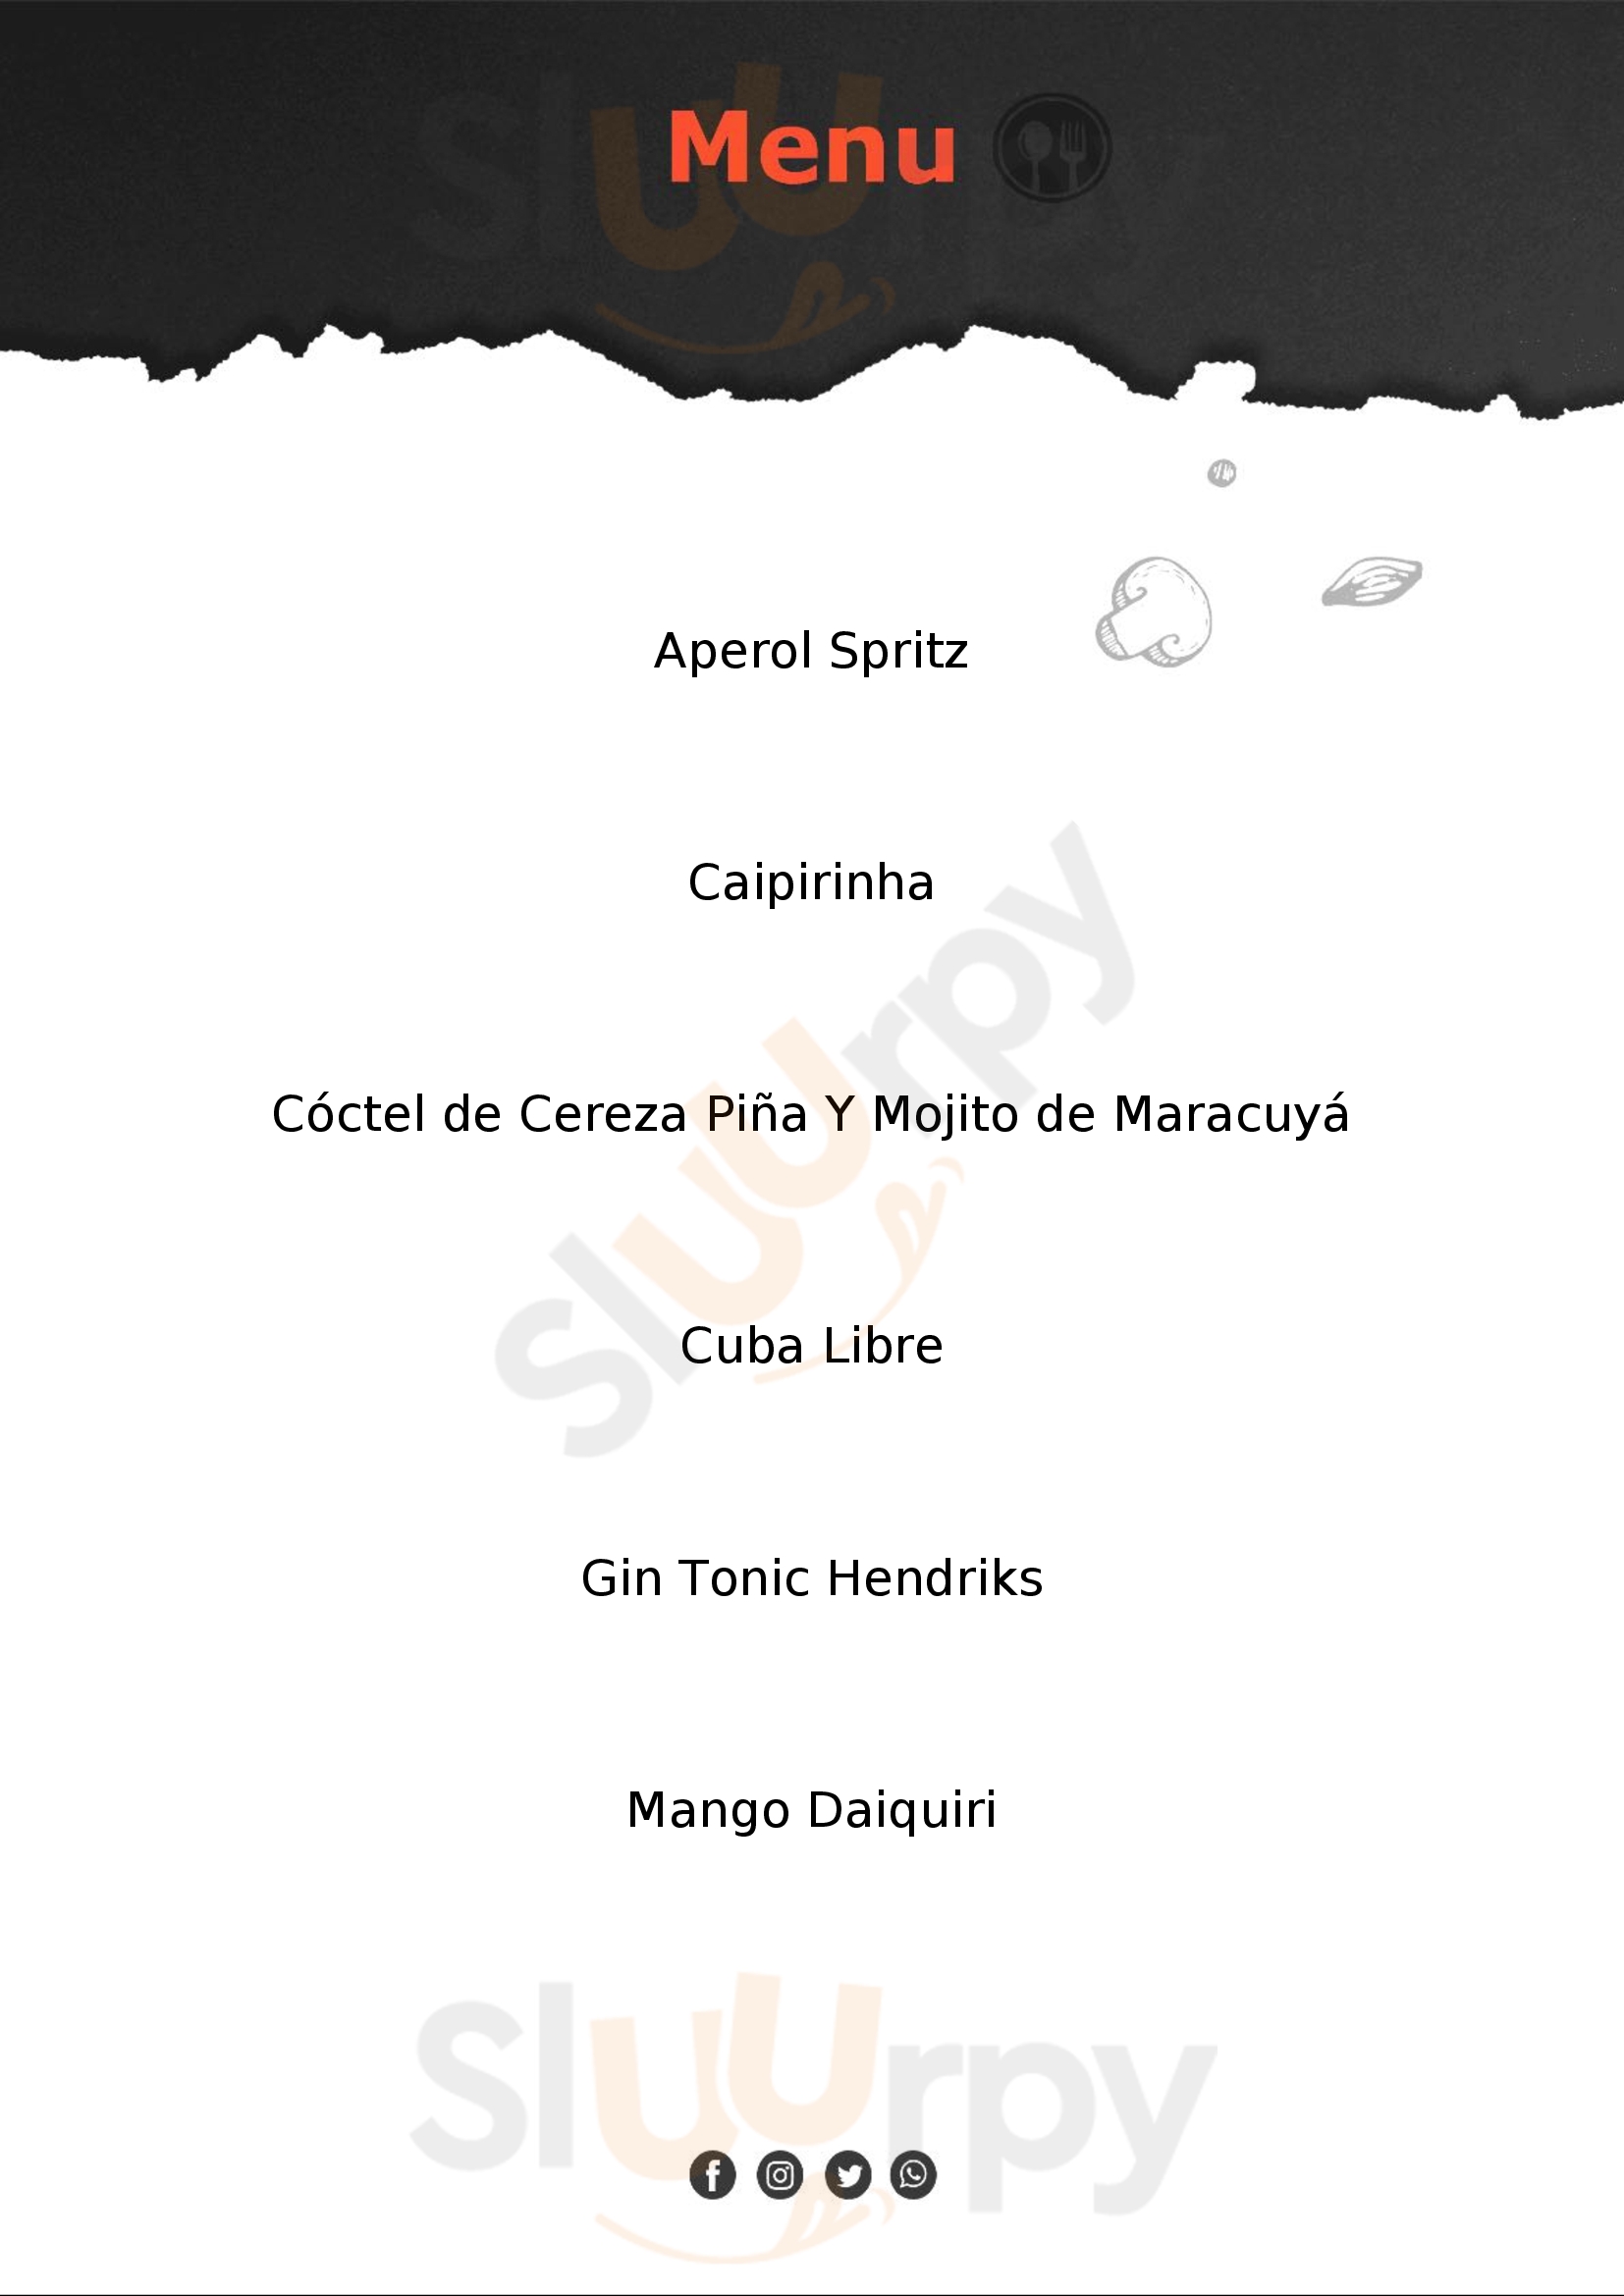 Daniel's Drinks Santa Cruz de Tenerife Menu - 1